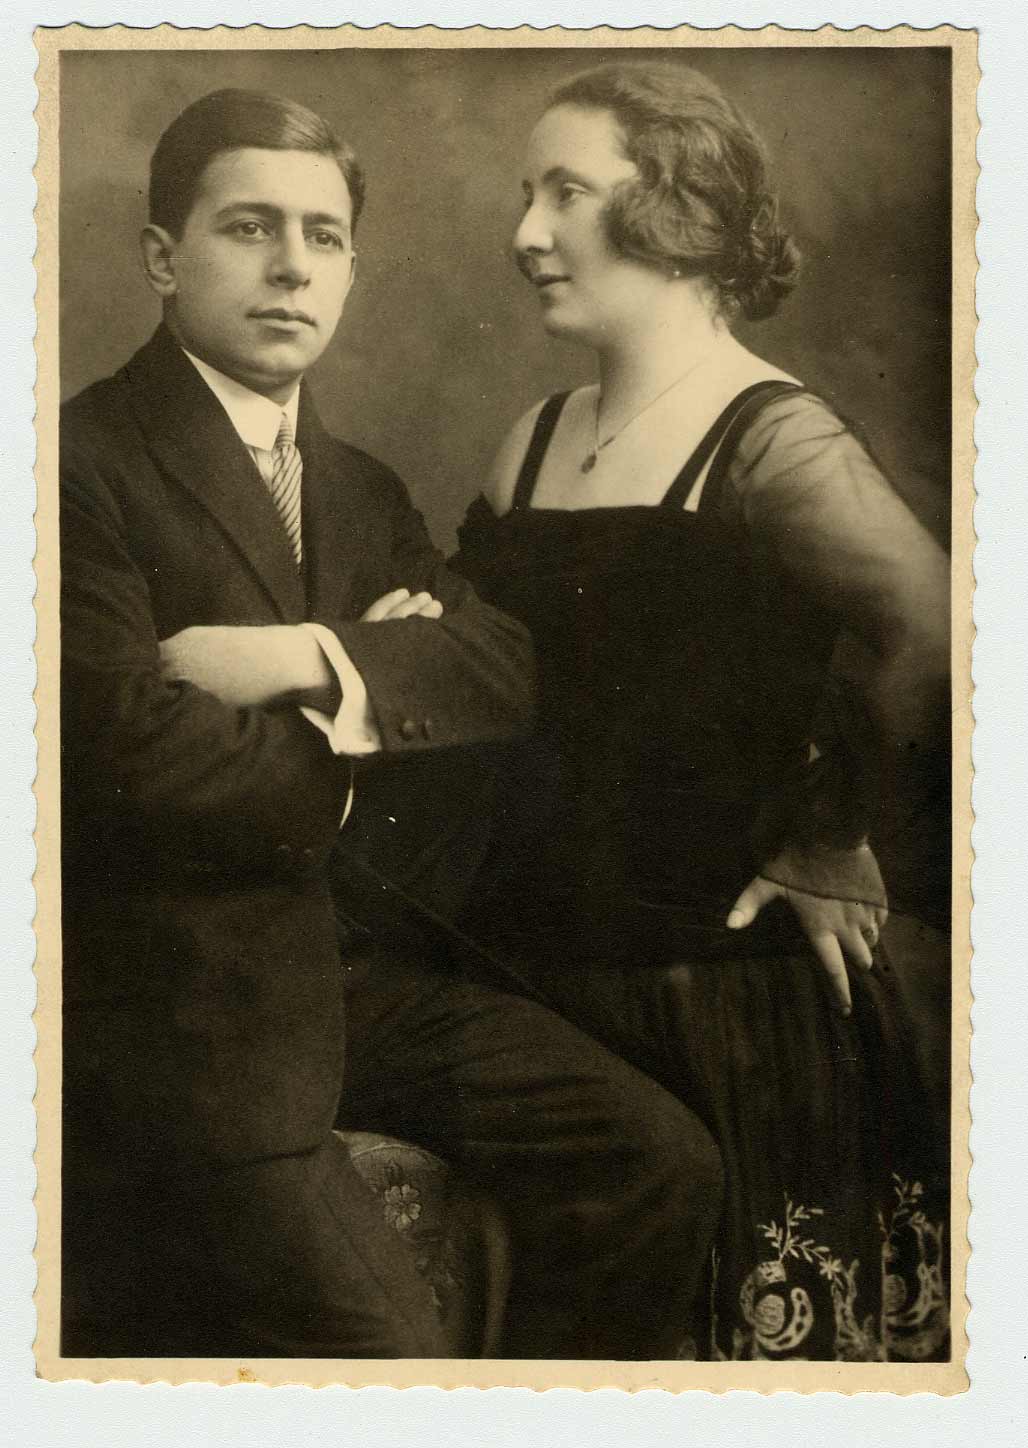 Une photographie des parents de Walter Absil, Otto et Margarethe Bondy. Tous deux ont été tués à Auschwitz en 1943.